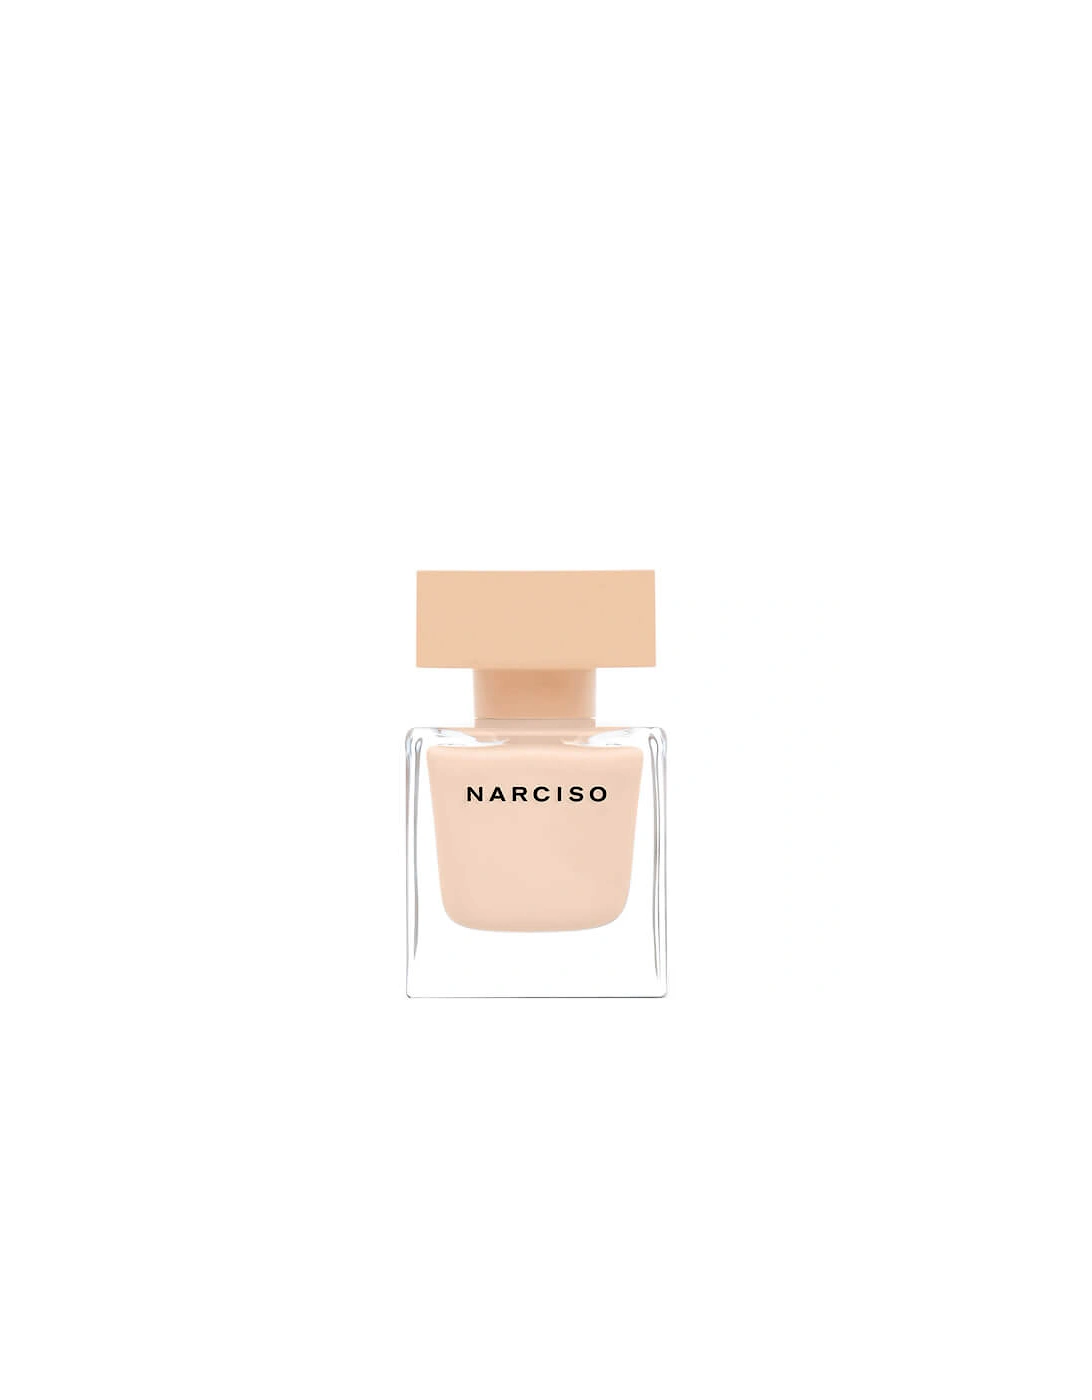 Narciso Poudrée Eau de Parfum - 30ml, 2 of 1